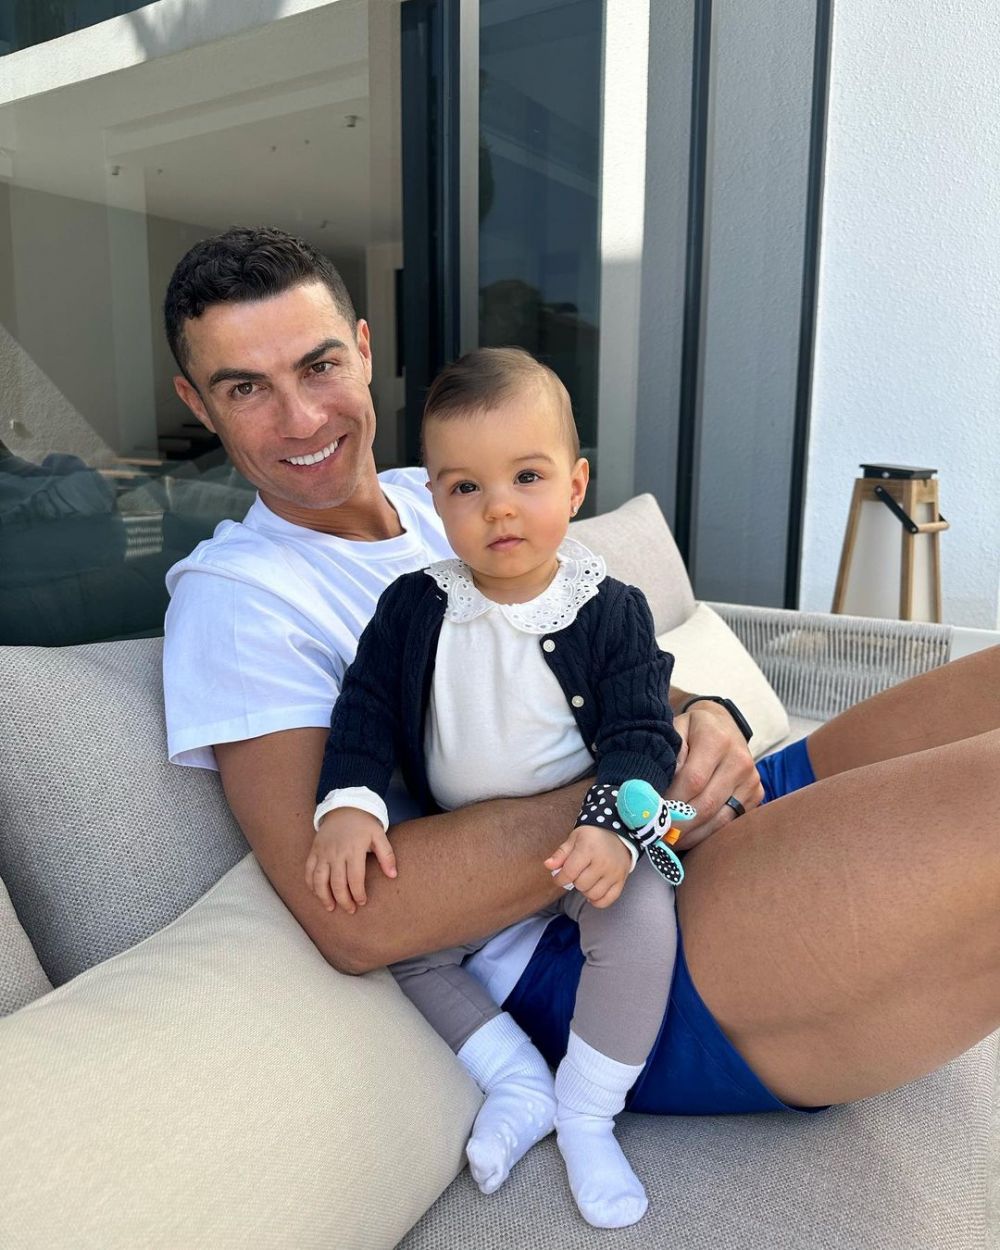 Imaginea de milioane de like-uri cu Cristiano Ronaldo și fiica lor cea mică postată de Georgina Rodriguez pe internet: "Îi iubesc"_1